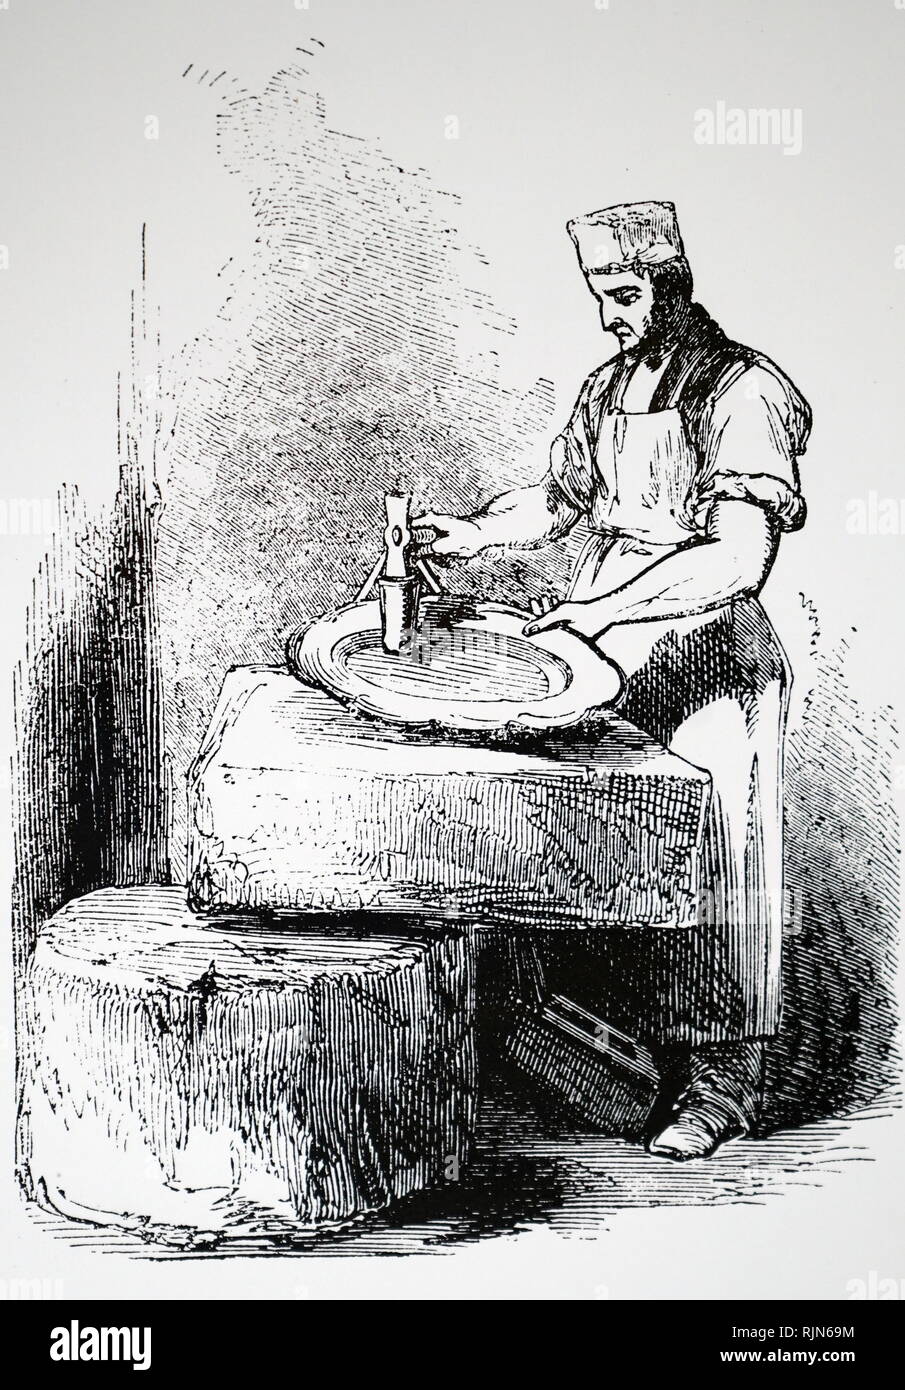 Illustration montrant la plaque d'argent : Brazier façonner un morceau de cuivre/nickel/alliage de zinc, ce qui finira par être dépôt électrolytique avec de l'argent. Les œuvres de Elkington, Birmingham 1844 Banque D'Images